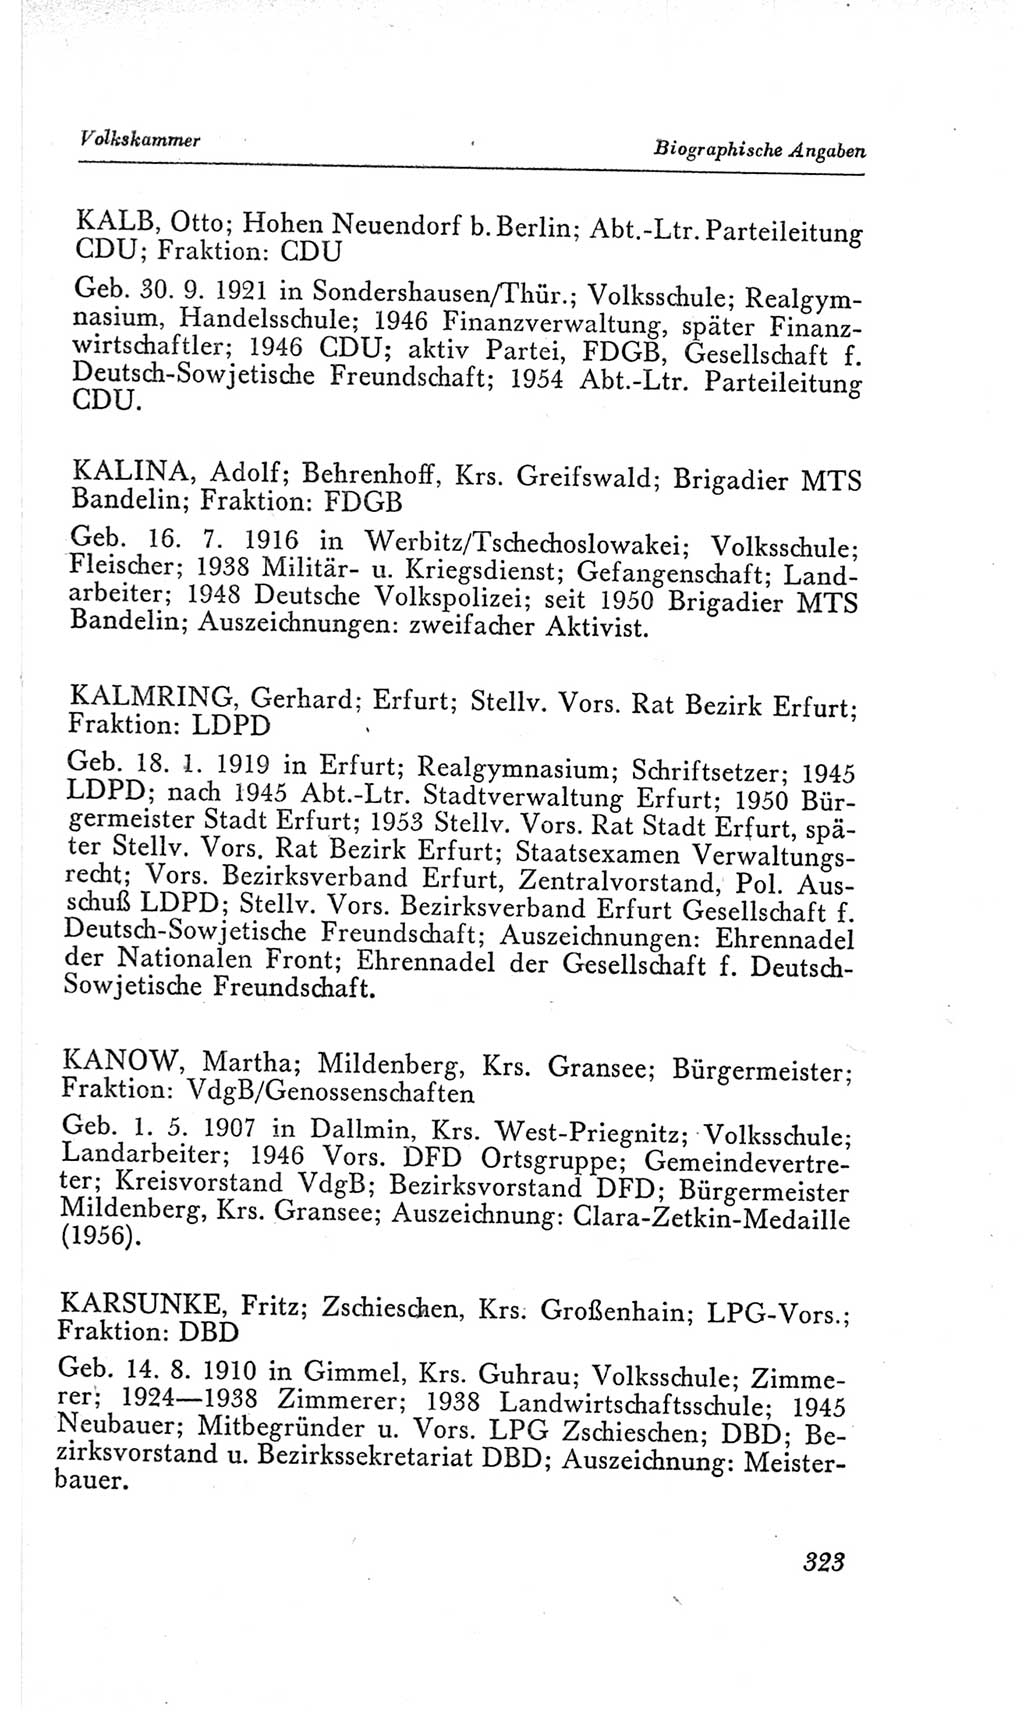 Handbuch der Volkskammer (VK) der Deutschen Demokratischen Republik (DDR), 2. Wahlperiode 1954-1958, Seite 323 (Hdb. VK. DDR, 2. WP. 1954-1958, S. 323)